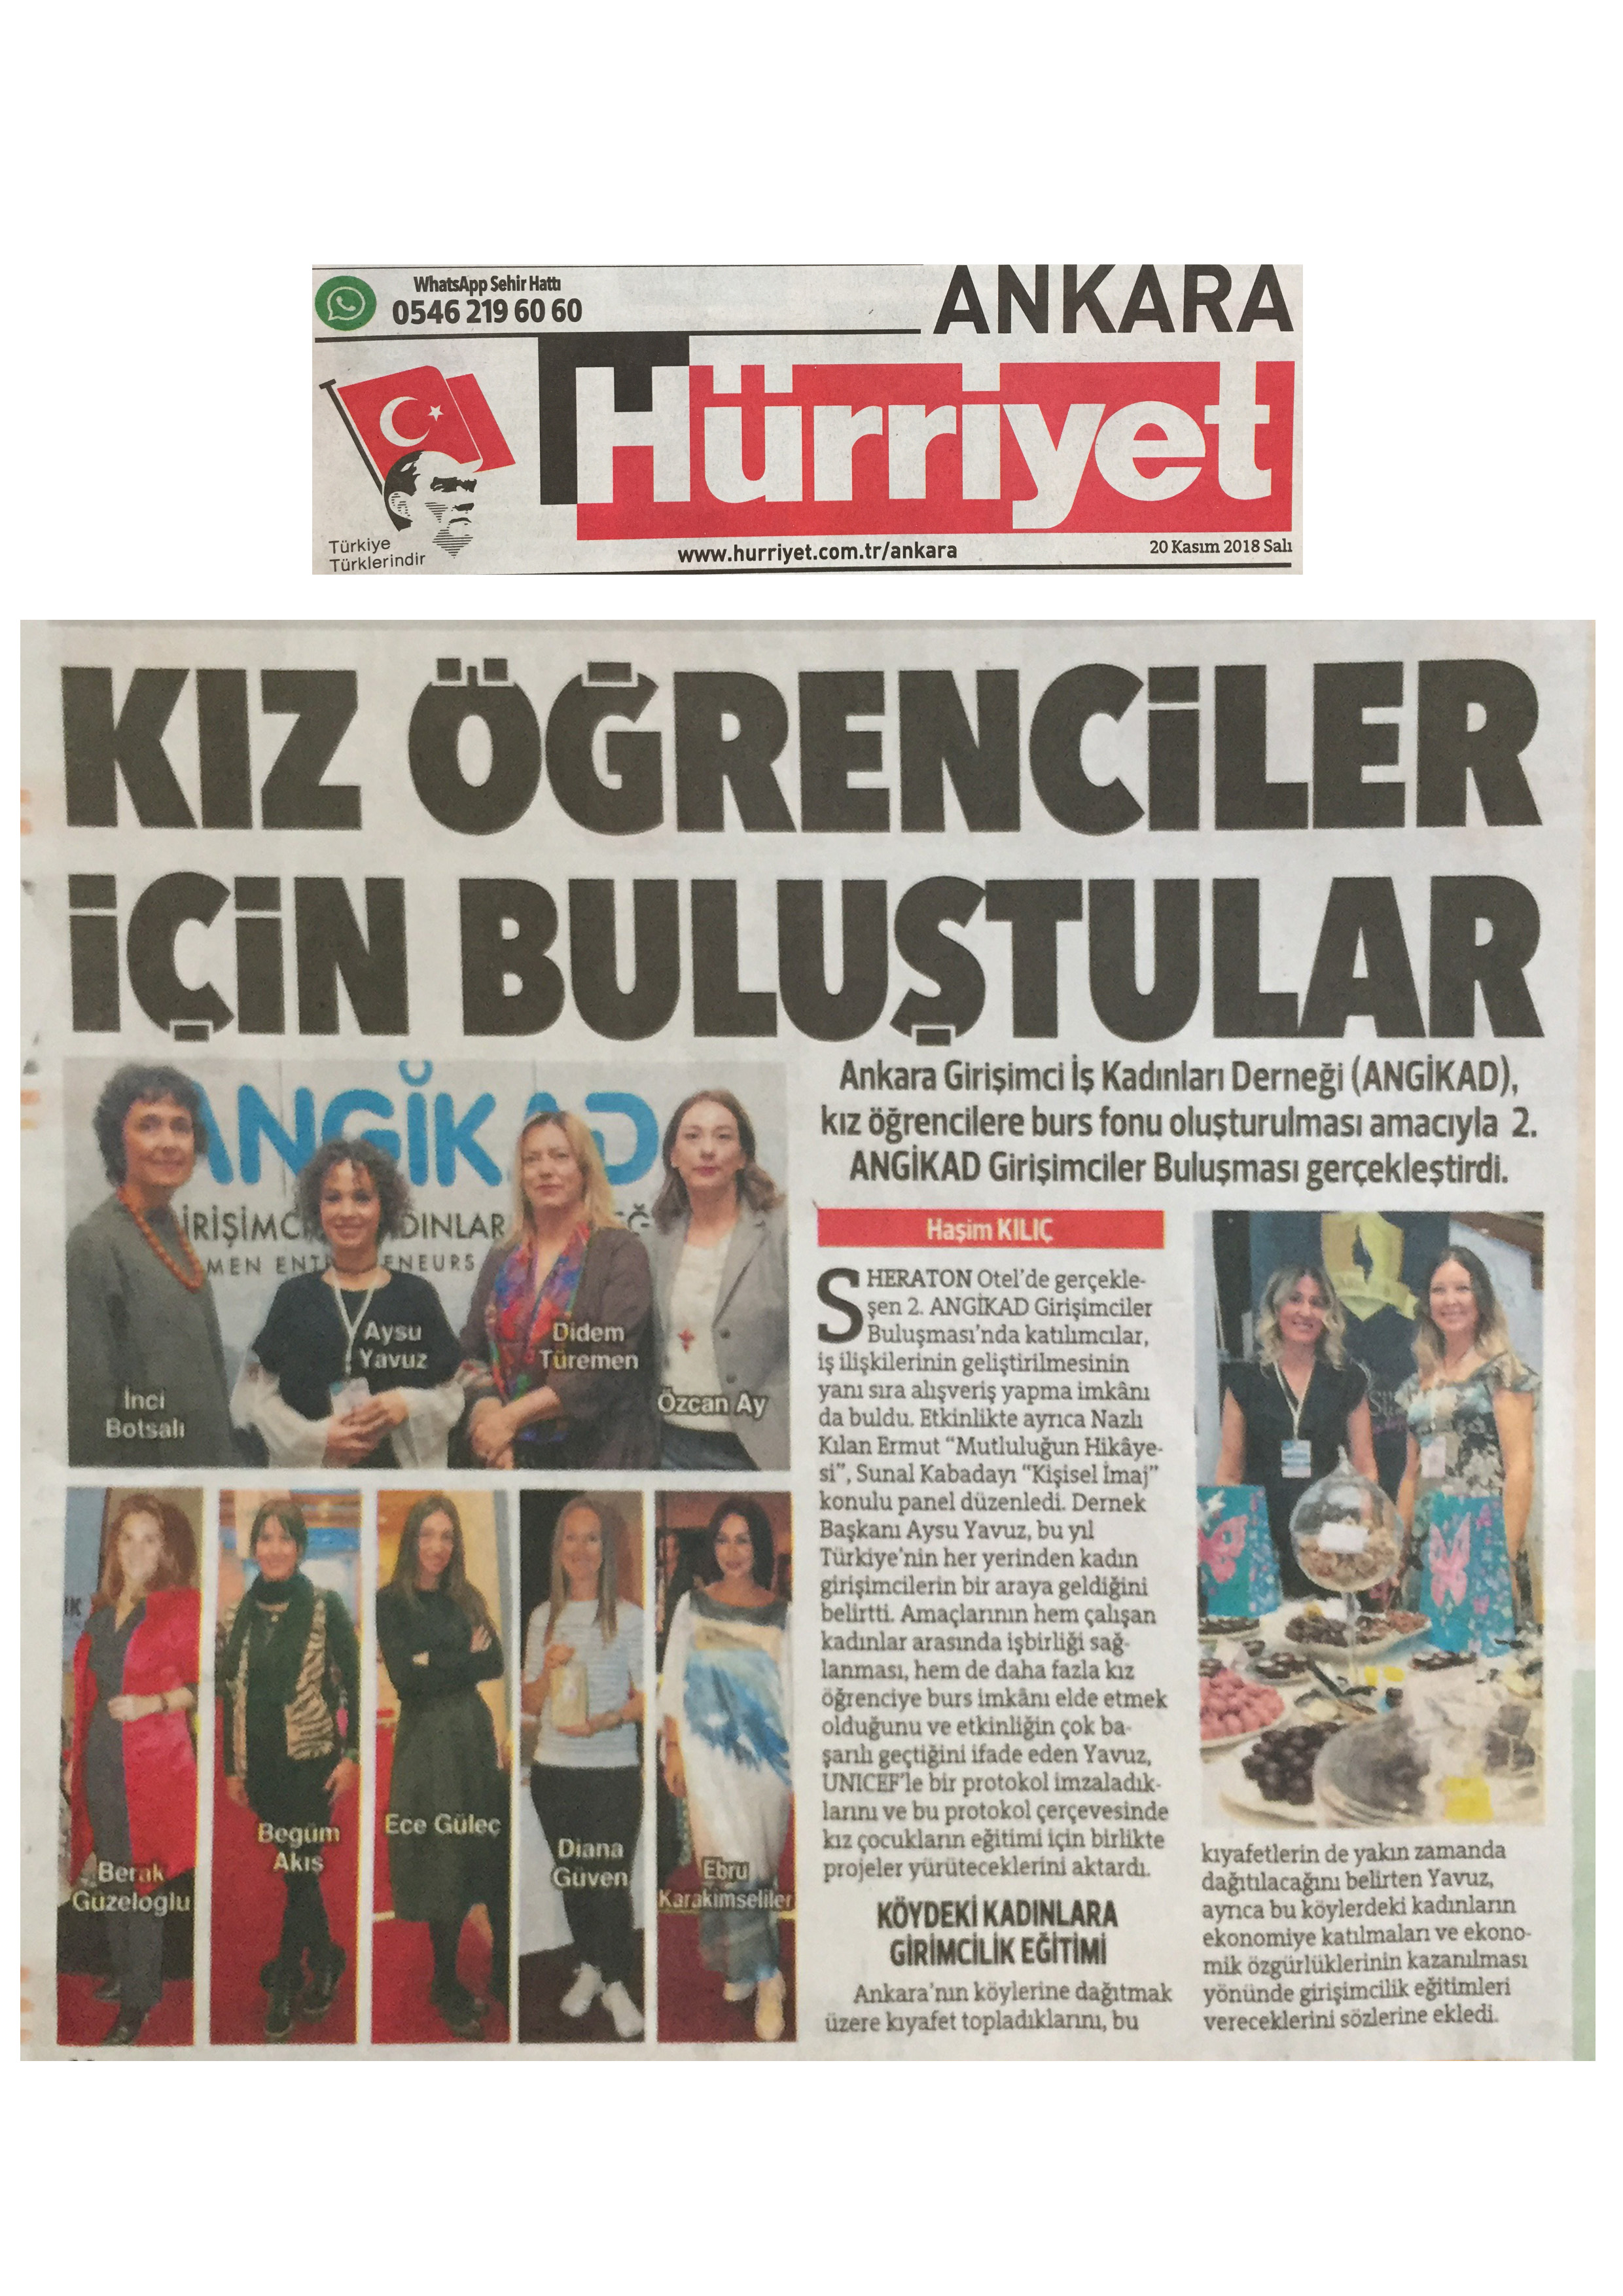 Hürriyet Ankara - Kız Öğrenciler için Buluştular